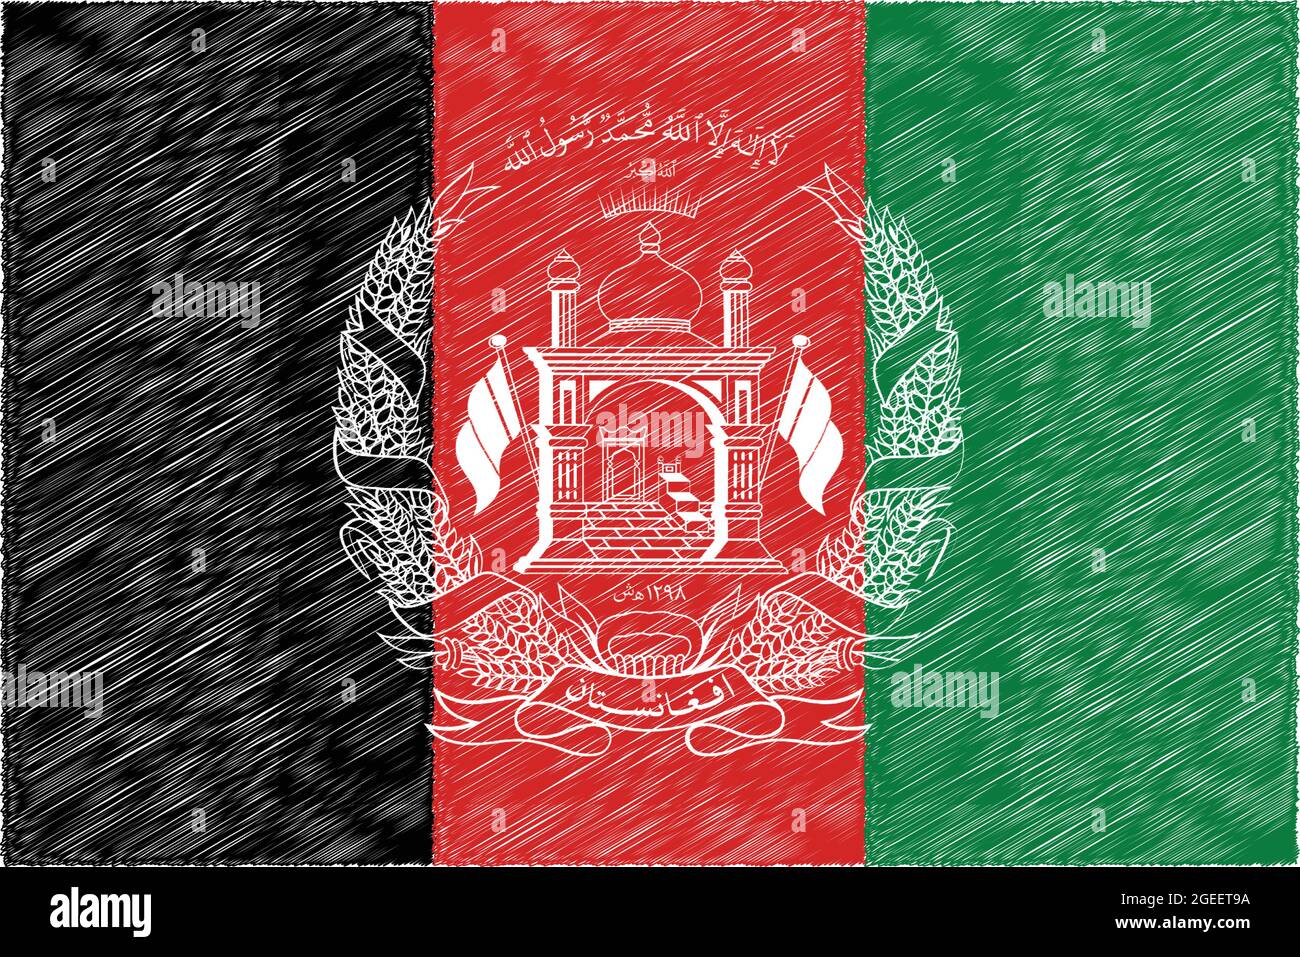 Bandera nacional de Afganistán tamaño original y colores ilustración de vectores cepillados, República Islámica del Afganistán bandera nacional escudo de armas Ilustración del Vector